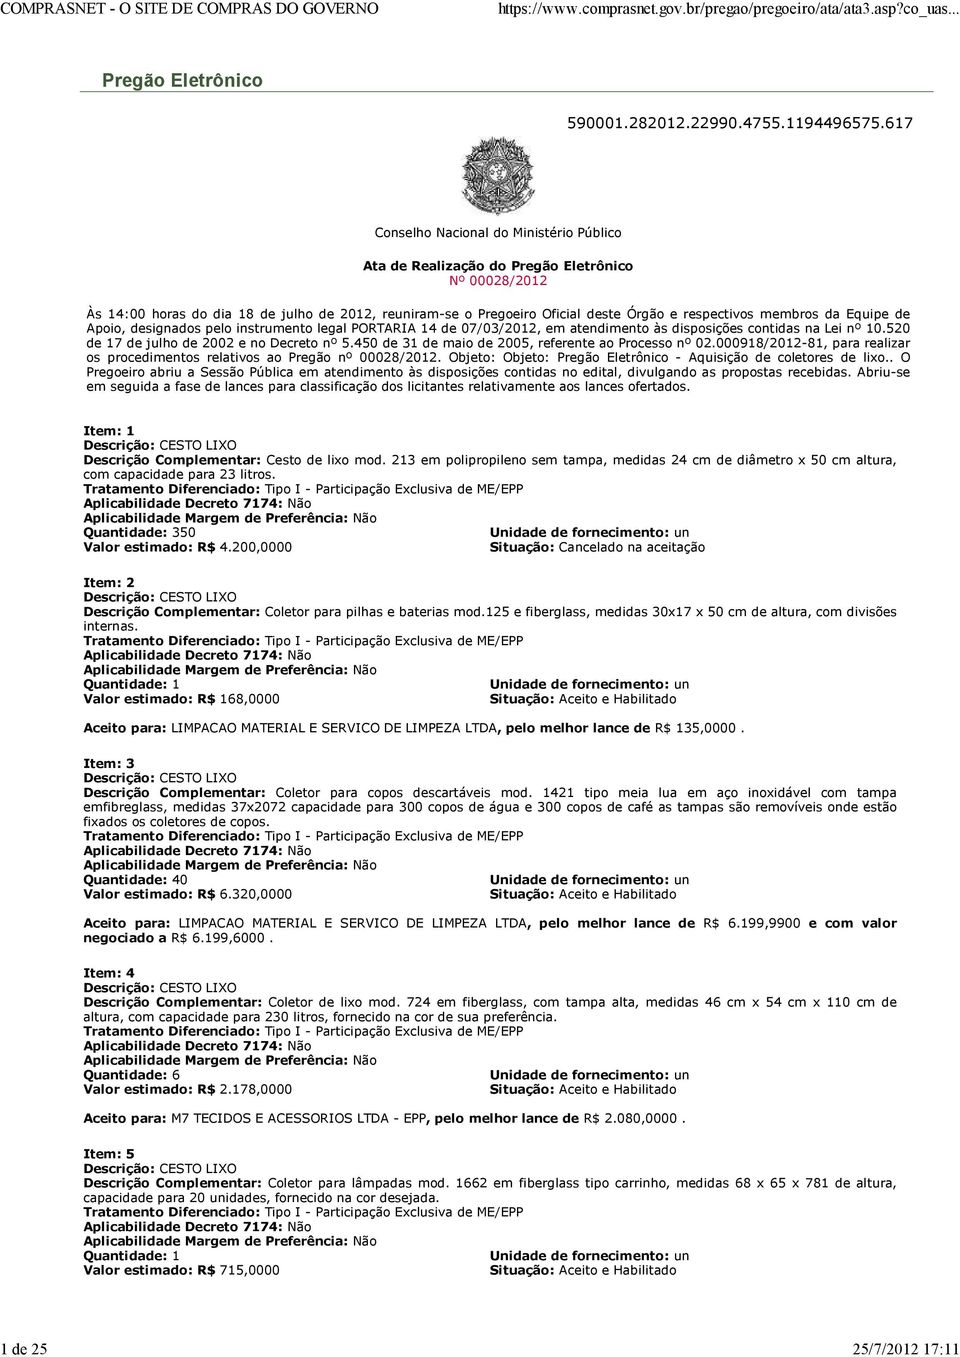 membros da Equipe de Apoio, designados pelo instrumento legal PORTARIA 14 de 07/03/2012, em atendimento às disposições contidas na Lei nº 10.520 de 17 de julho de 2002 e no Decreto nº 5.